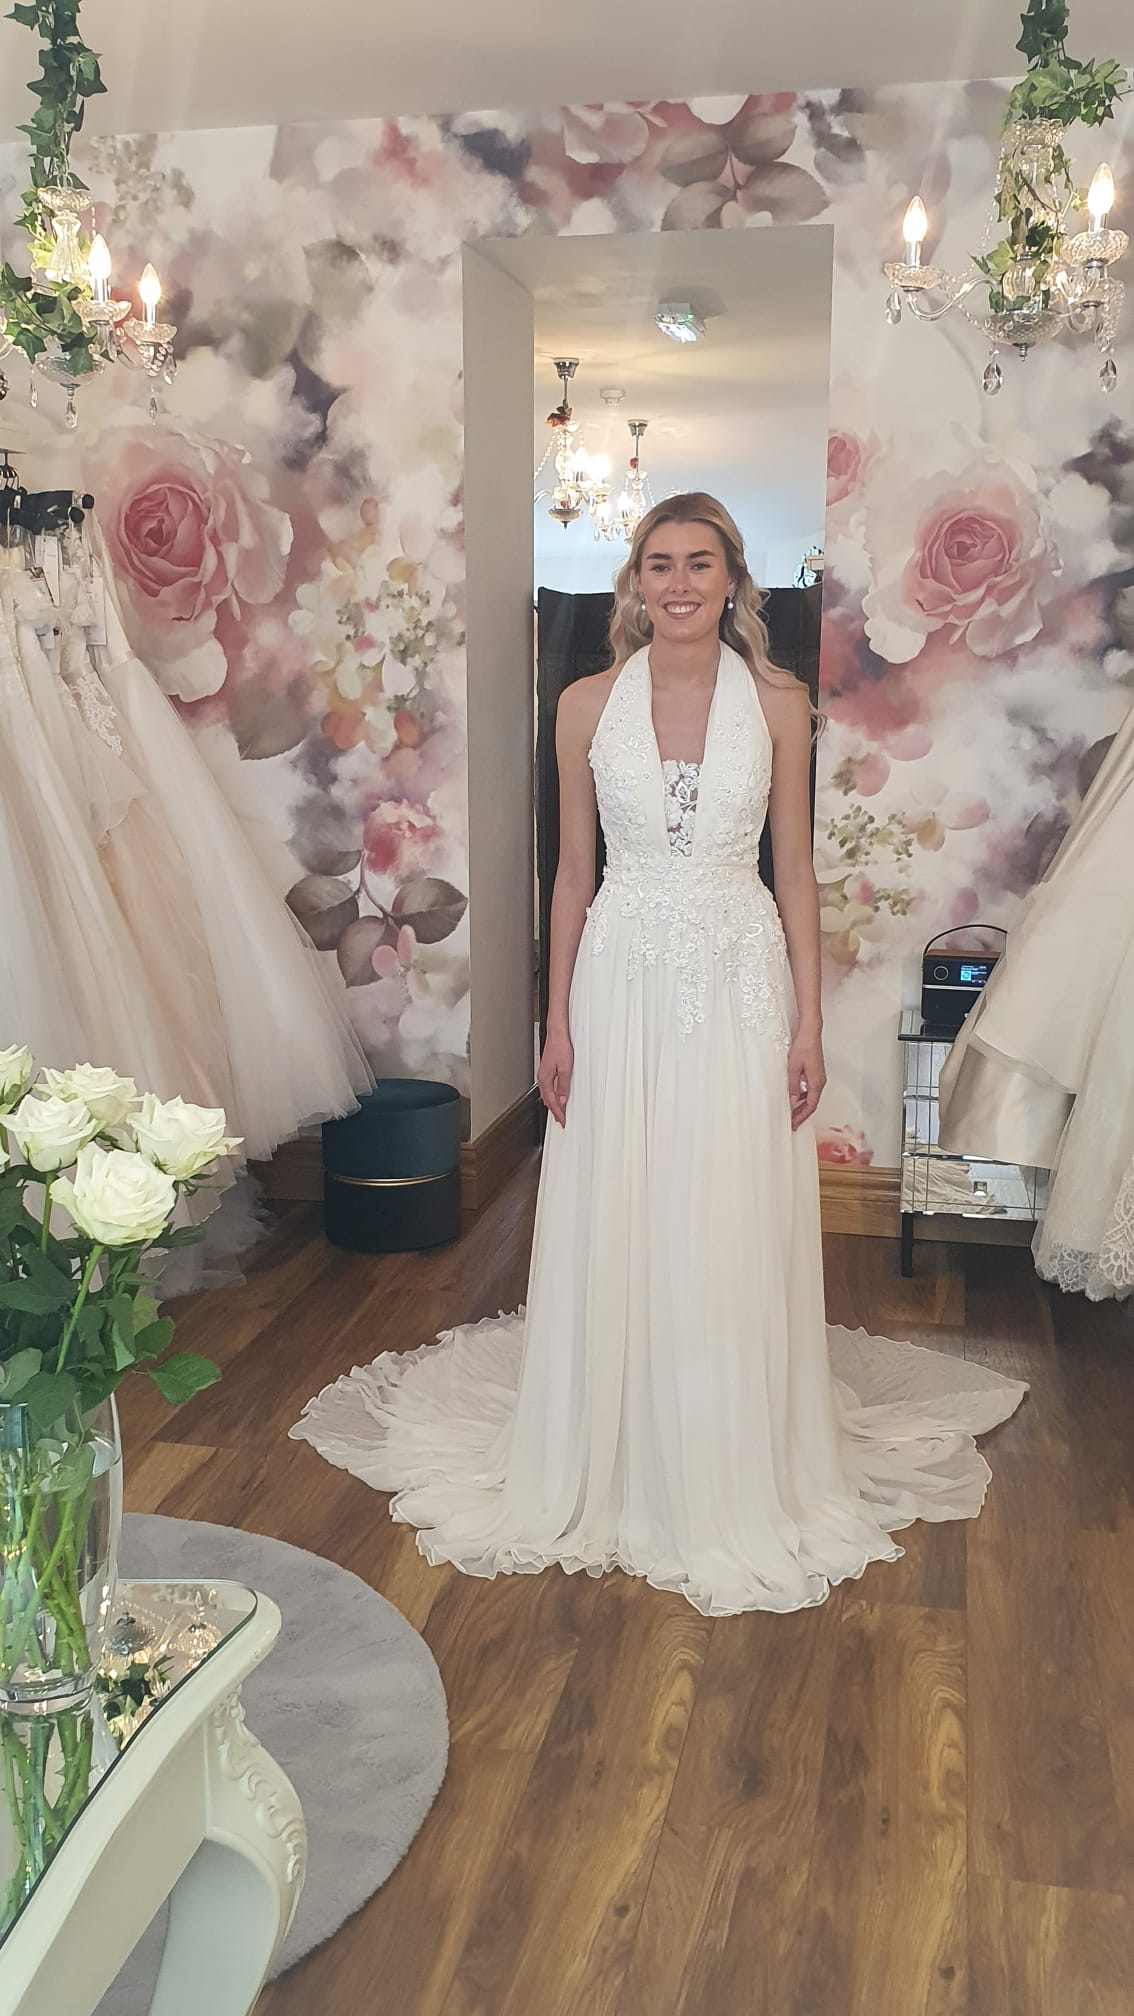 Bridal Sample Sale - Designer Gown 40-70% off for a limited time! | Wedding  dress sample sale, Bridal sale, Sample sale